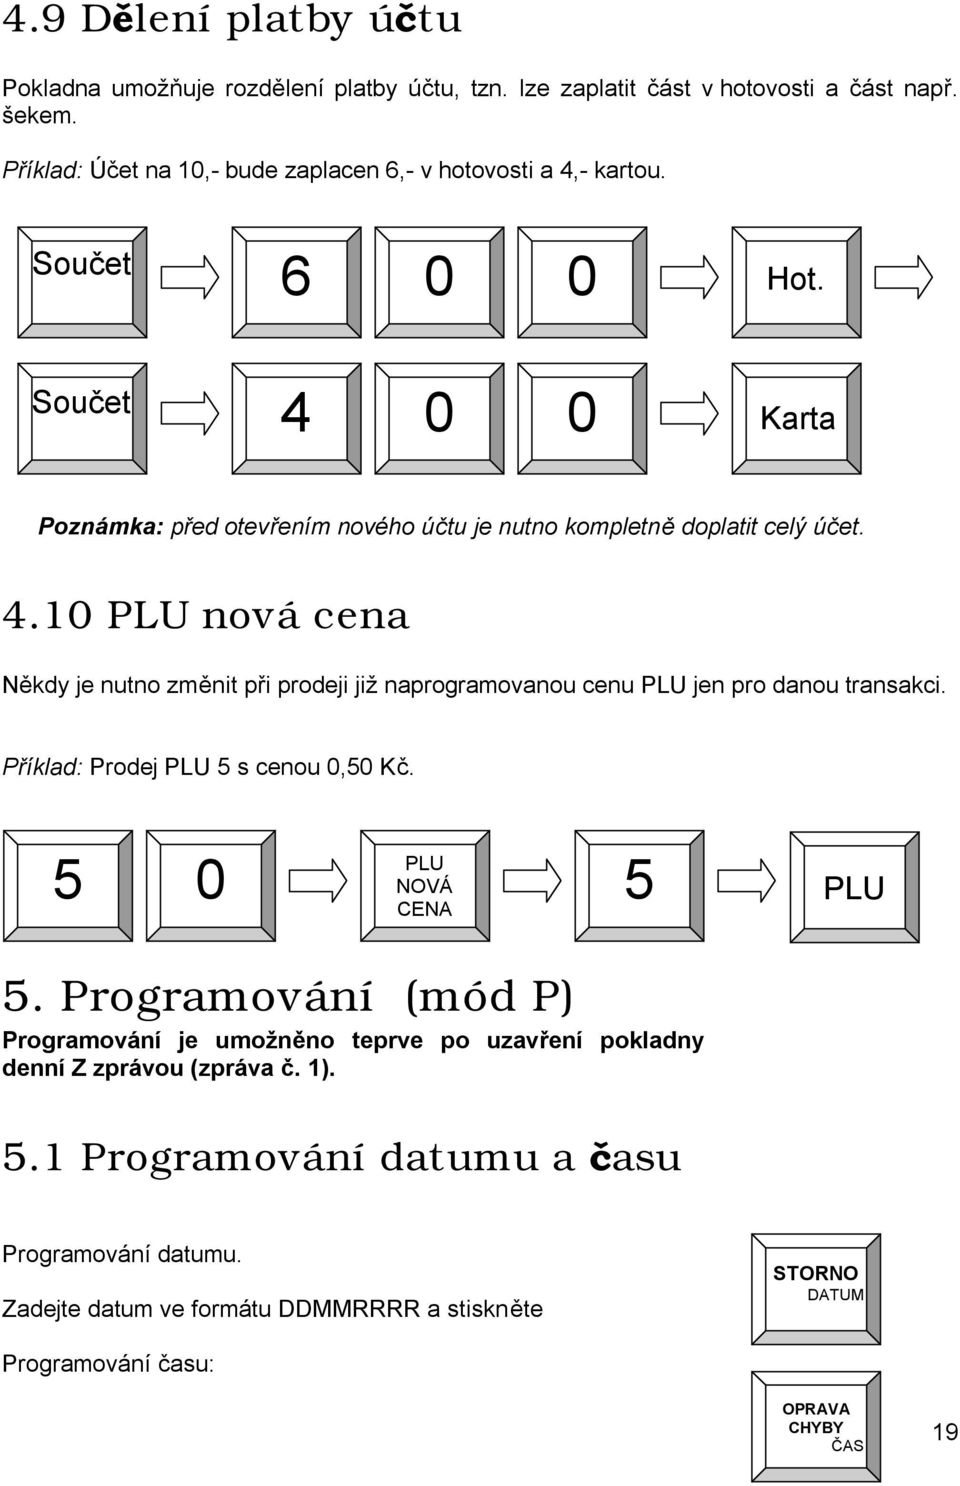 Příklad: Prodej PLU 5 s cenou 0,50 Kč. PLU 5 0 5 NOVÁ CENA PLU 5. Programování (mód P) Programování je umožněno teprve po uzavření pokladny denní Z zprávou (zpráva č. 1). 5.1 Programování datumu a času Programování datumu.